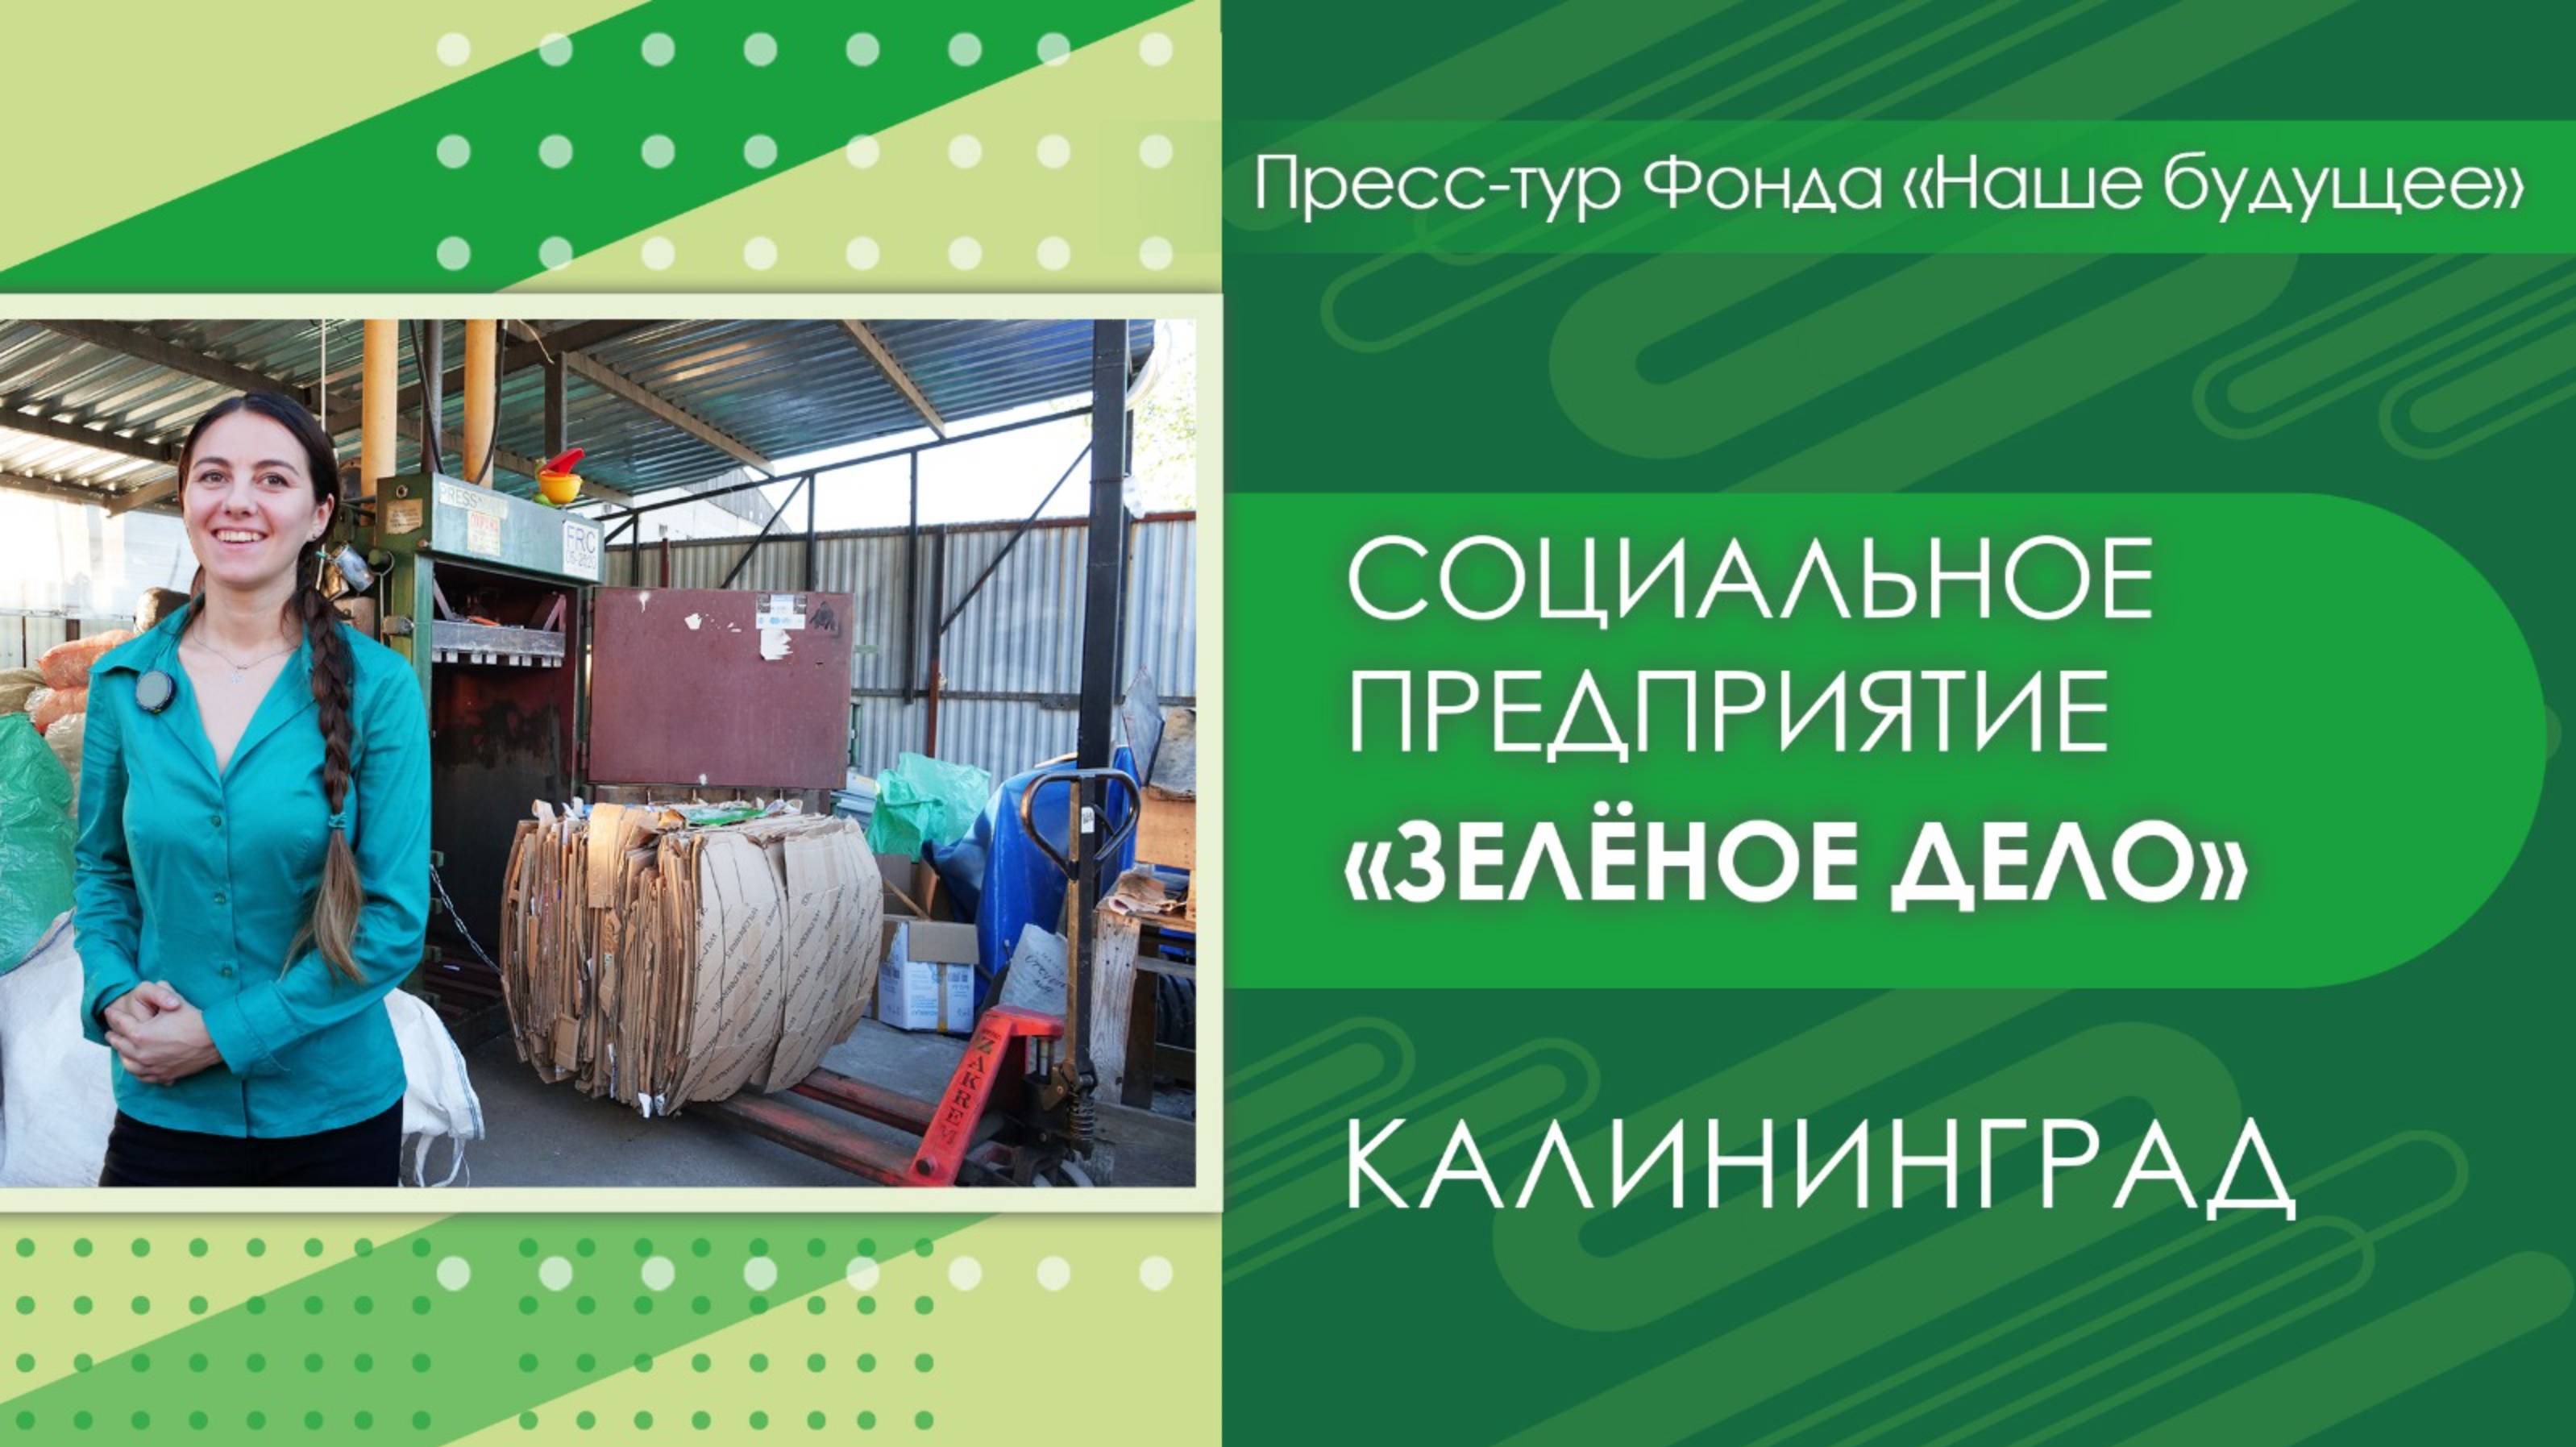 Социальное предприятие «Зеленое дело» | Пресс-тур Калининград